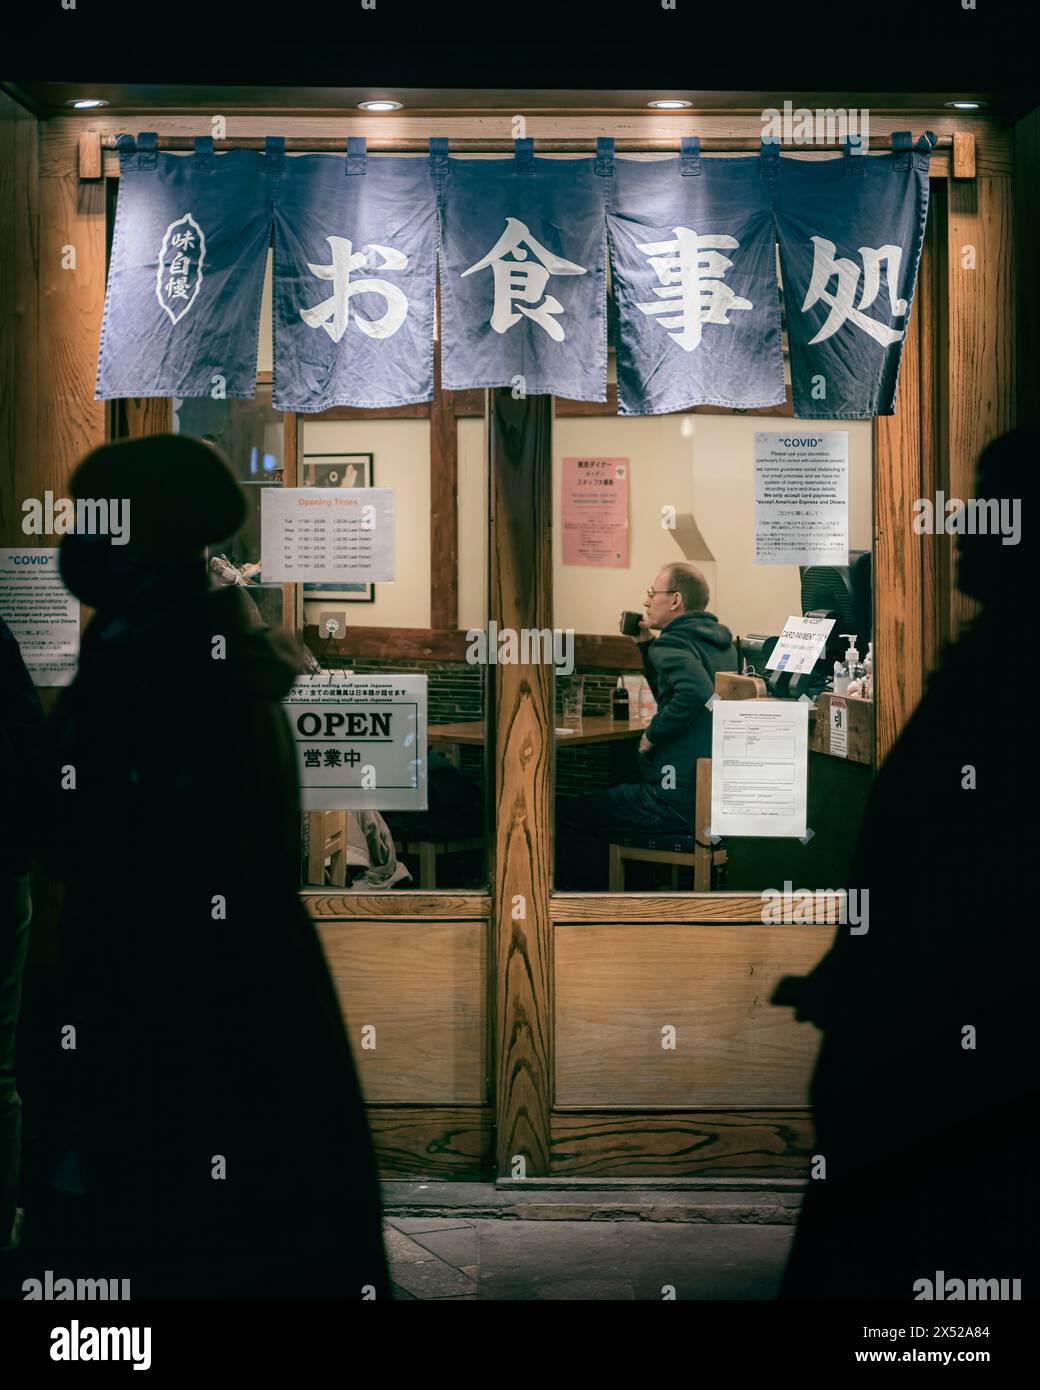 London - 21. November 2021 - Blick auf das Fenster des japanischen Restaurants bei Nacht im warmen Licht, London, Großbritannien Stockfoto